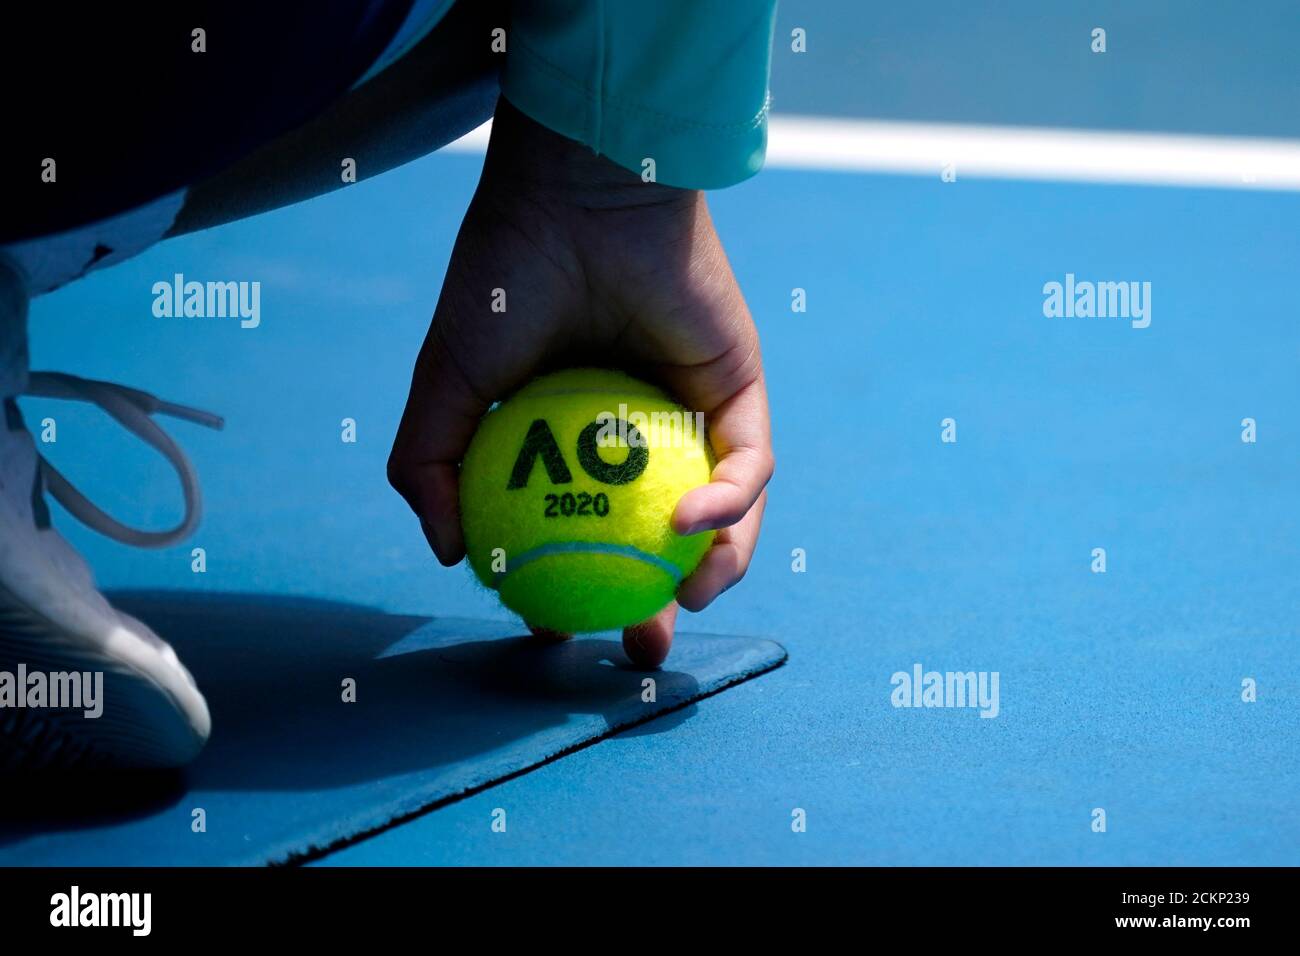 Tennis - Open d'Australie - quatrième tour - Melbourne Park, Melbourne,  Australie - le 27 janvier 2020 - UN joueur de baseball tient une balle de tennis  Open d'Australie pendant le match